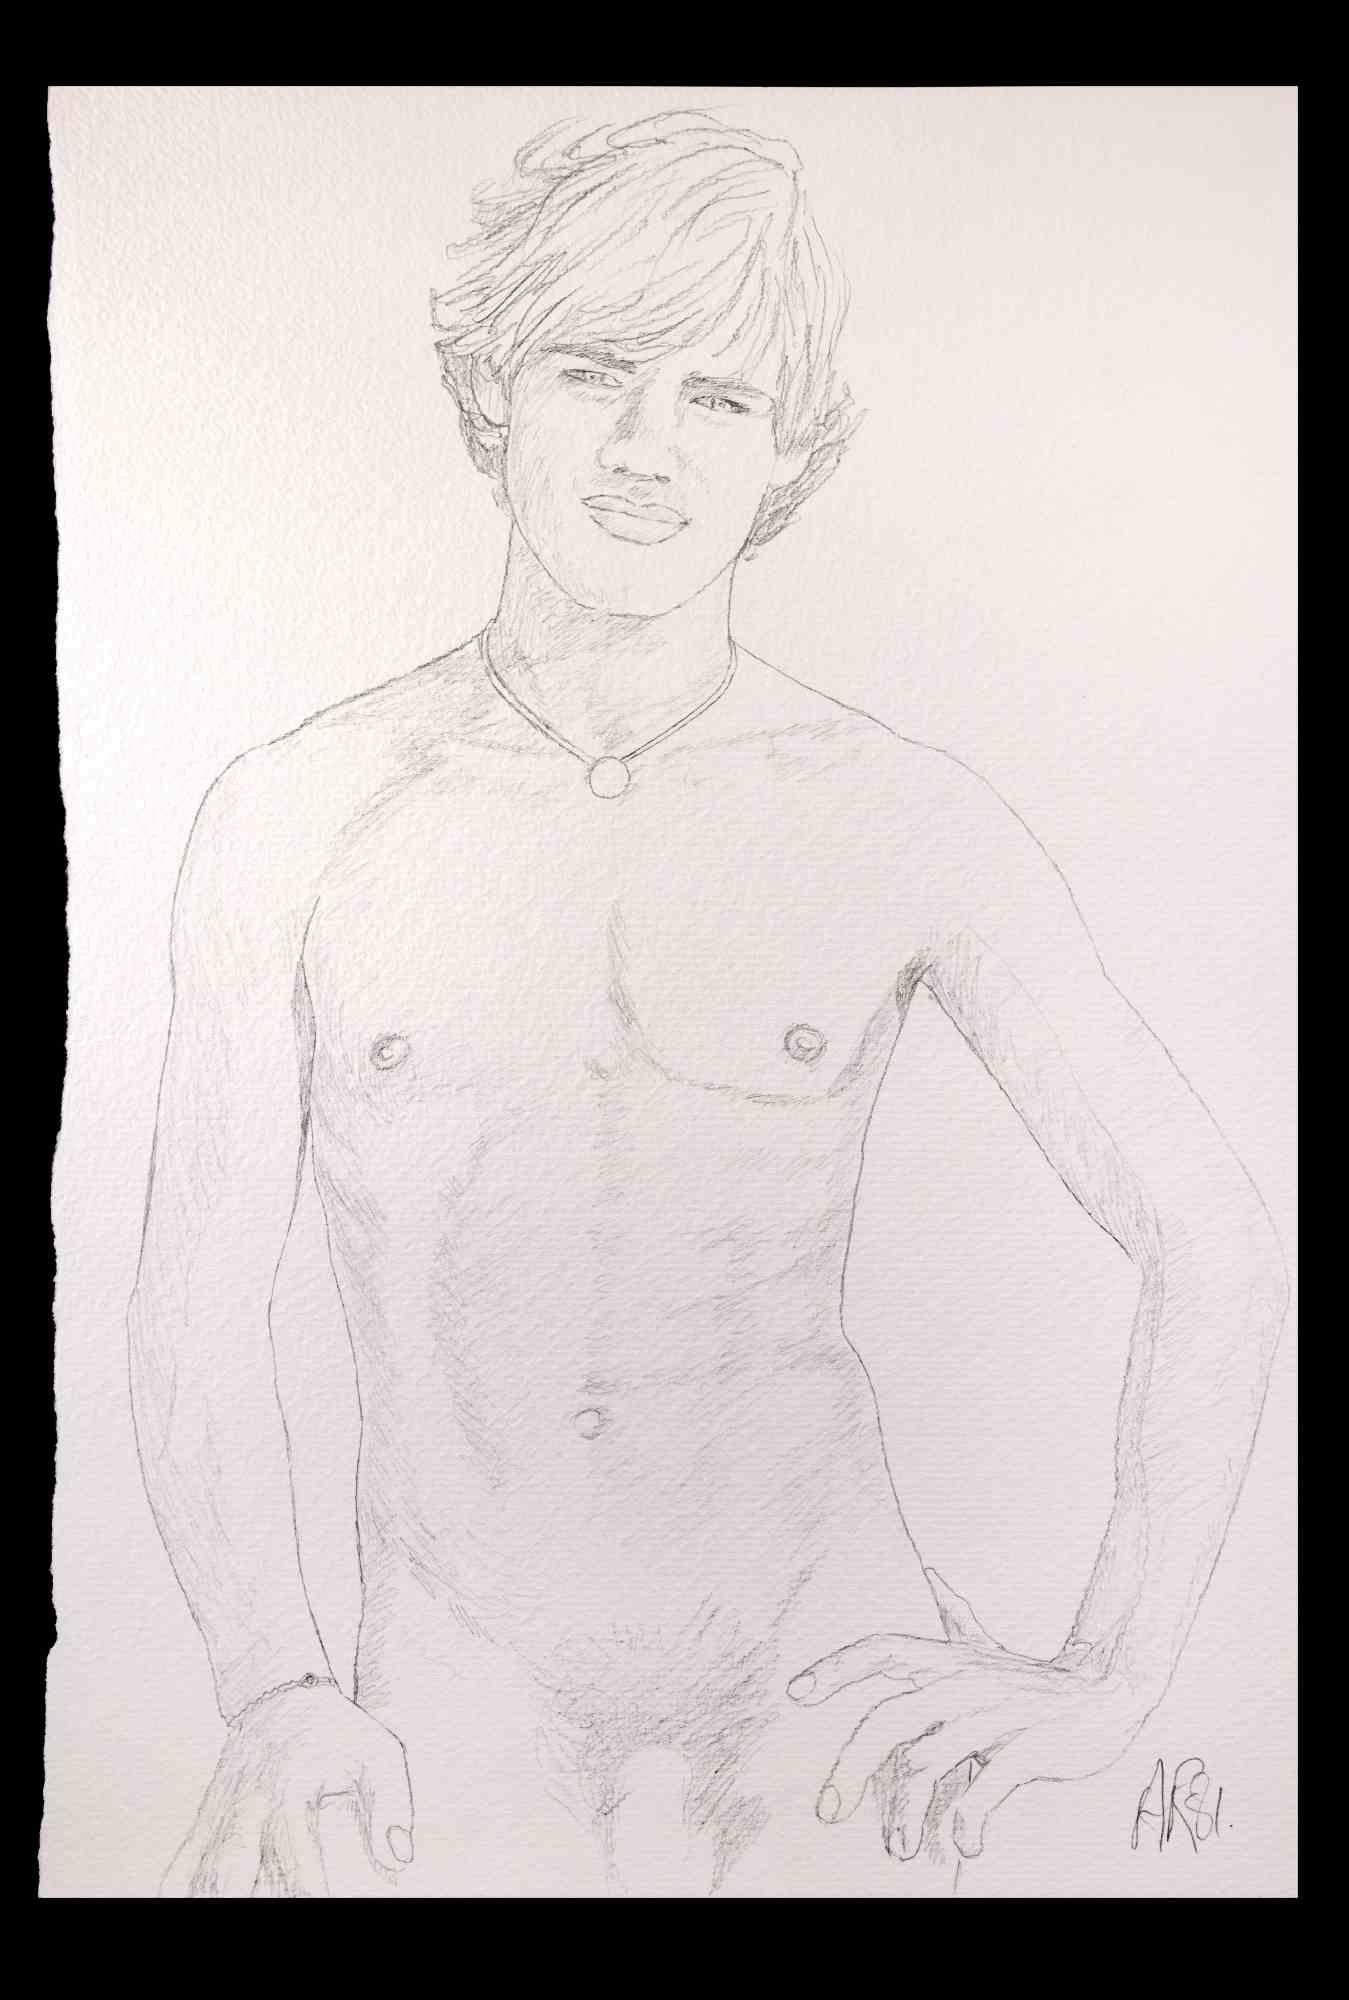 Porträt eines Jungen  ist eine Originalzeichnung mit Bleistift von Anthony Roaland aus dem Jahr 1981. Handsigniert und datiert vom Künstler am unteren rechten Rand. 

Das Kunstwerk stellt ein frisches und schönes männliches Aktporträt dar.

Gute